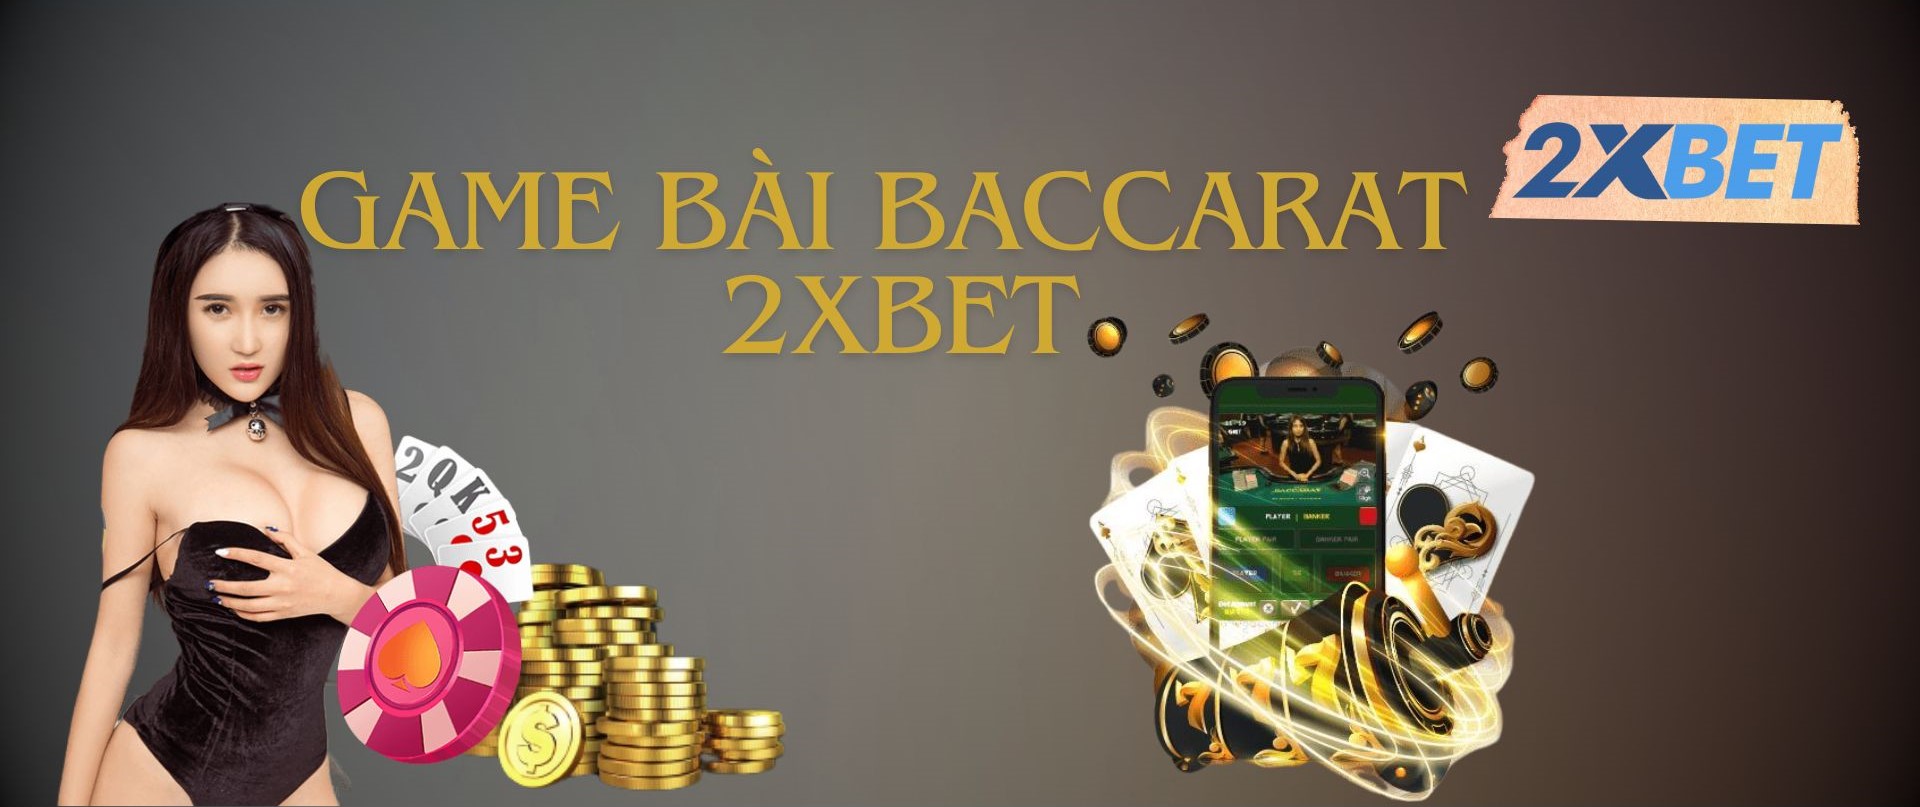 Tin tức về game bài Baccarat 2XBET